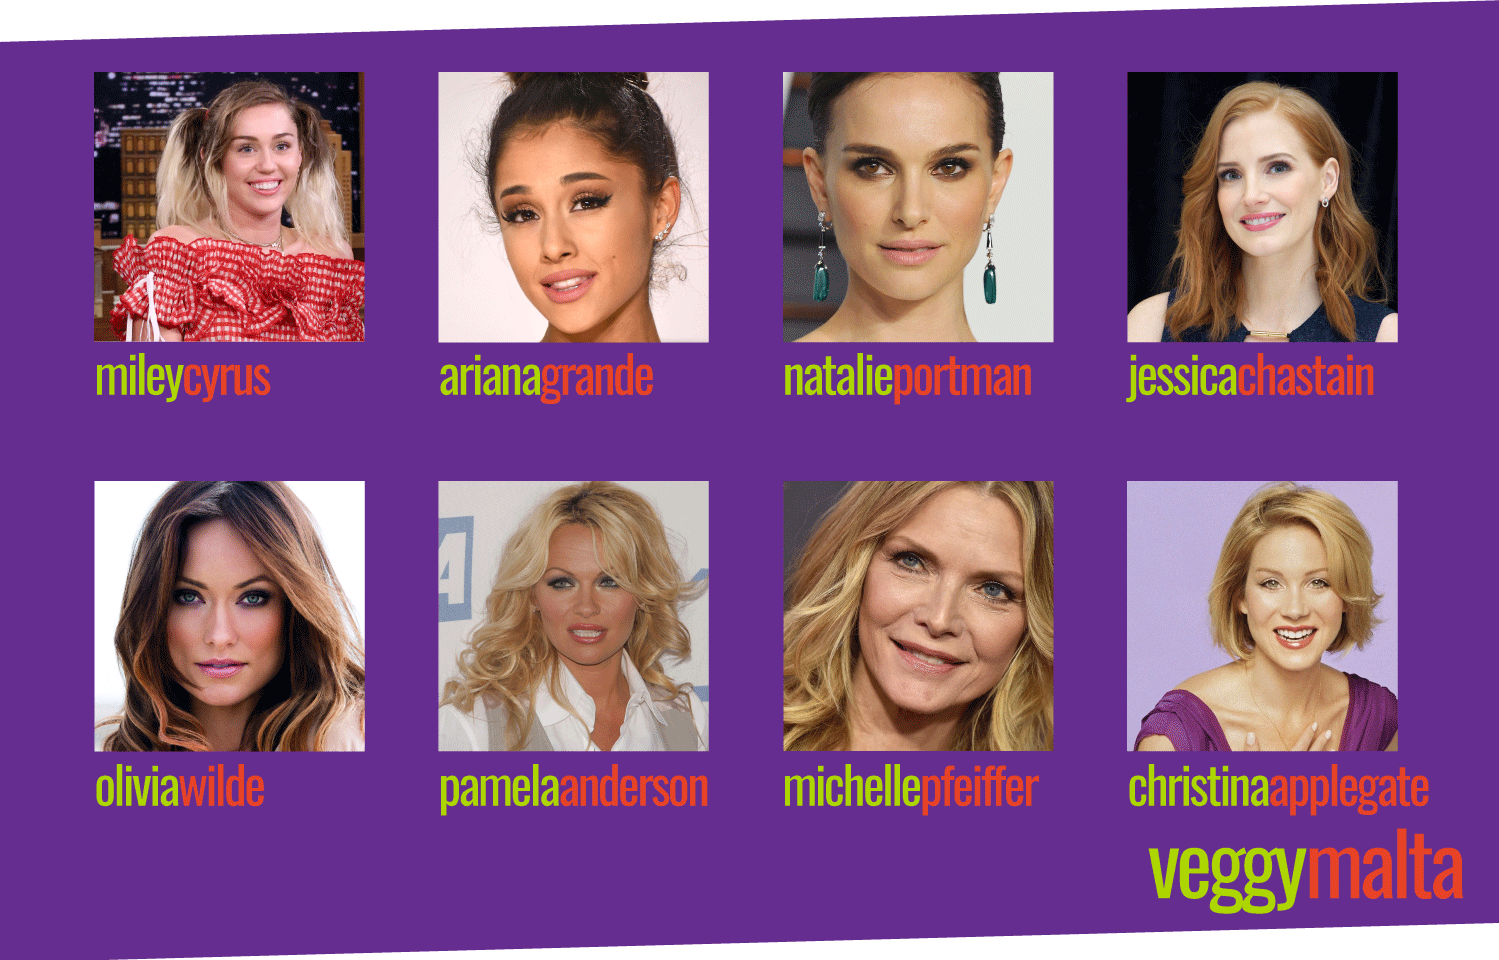 vegetarian-vegan-celebrities